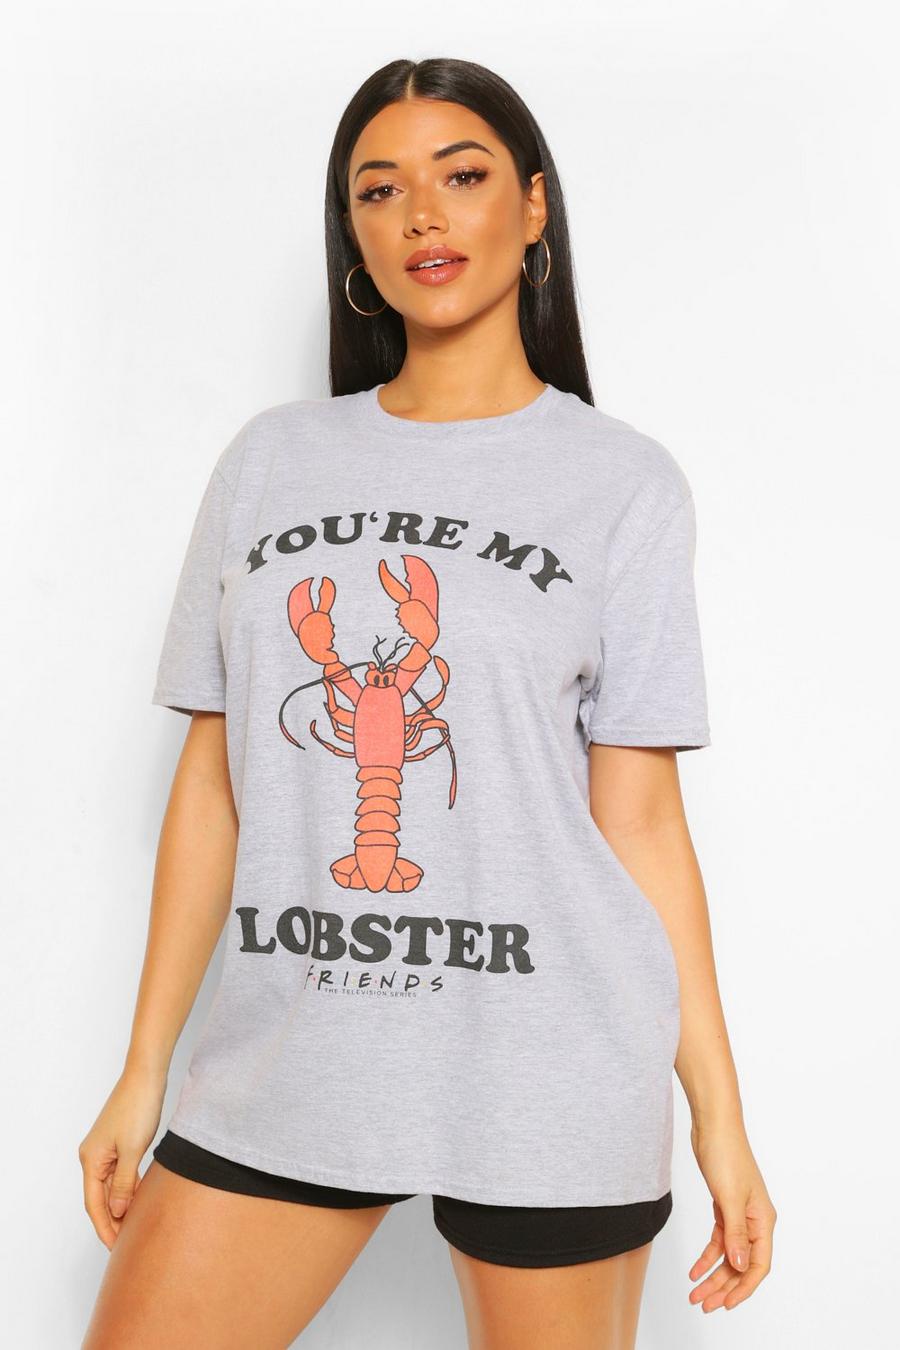 T-shirt officiel Friends 'Lobster', Grey